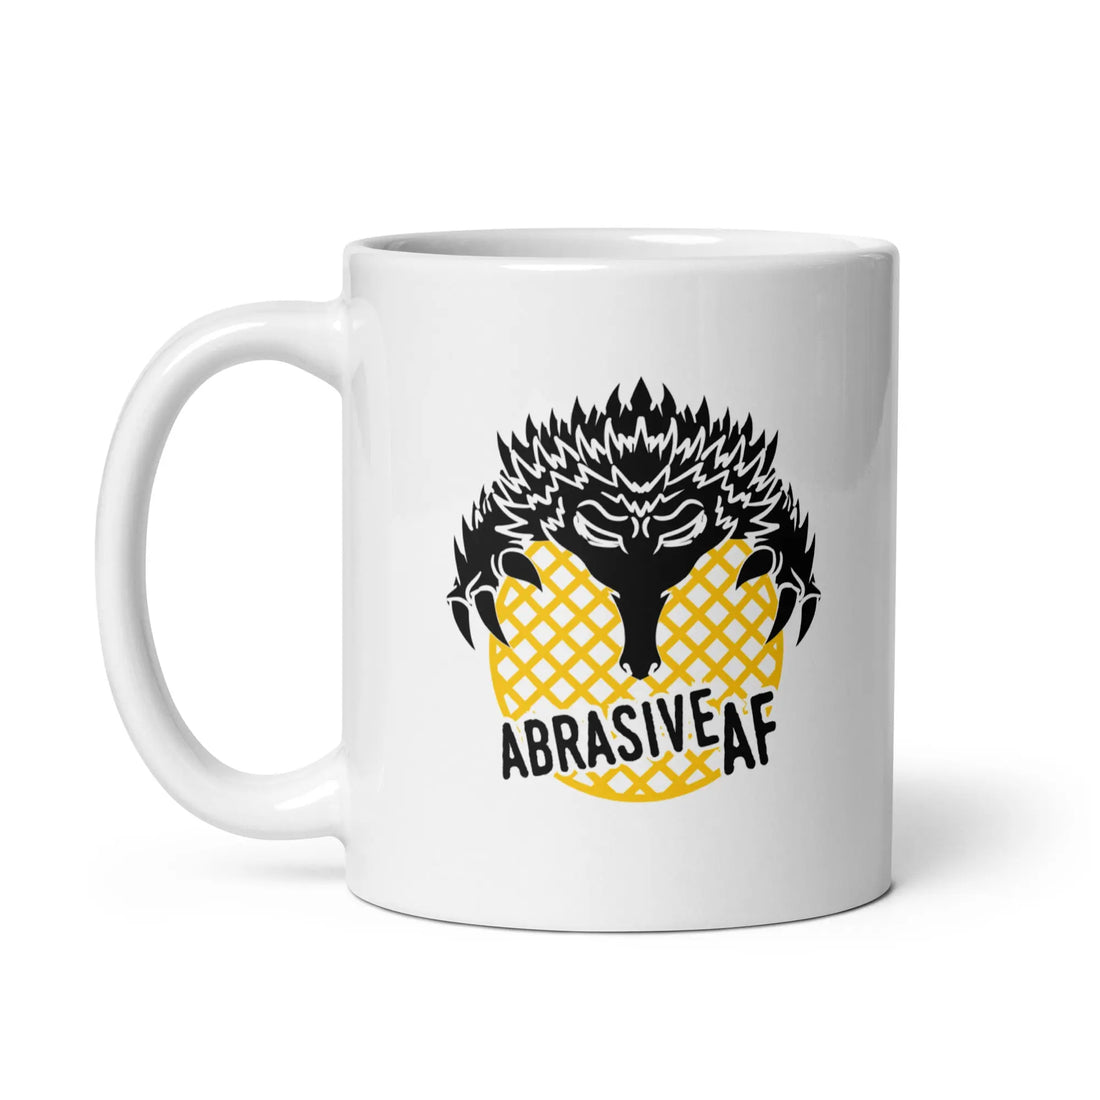 Abrasive AF Mug - White Best Abrasives 